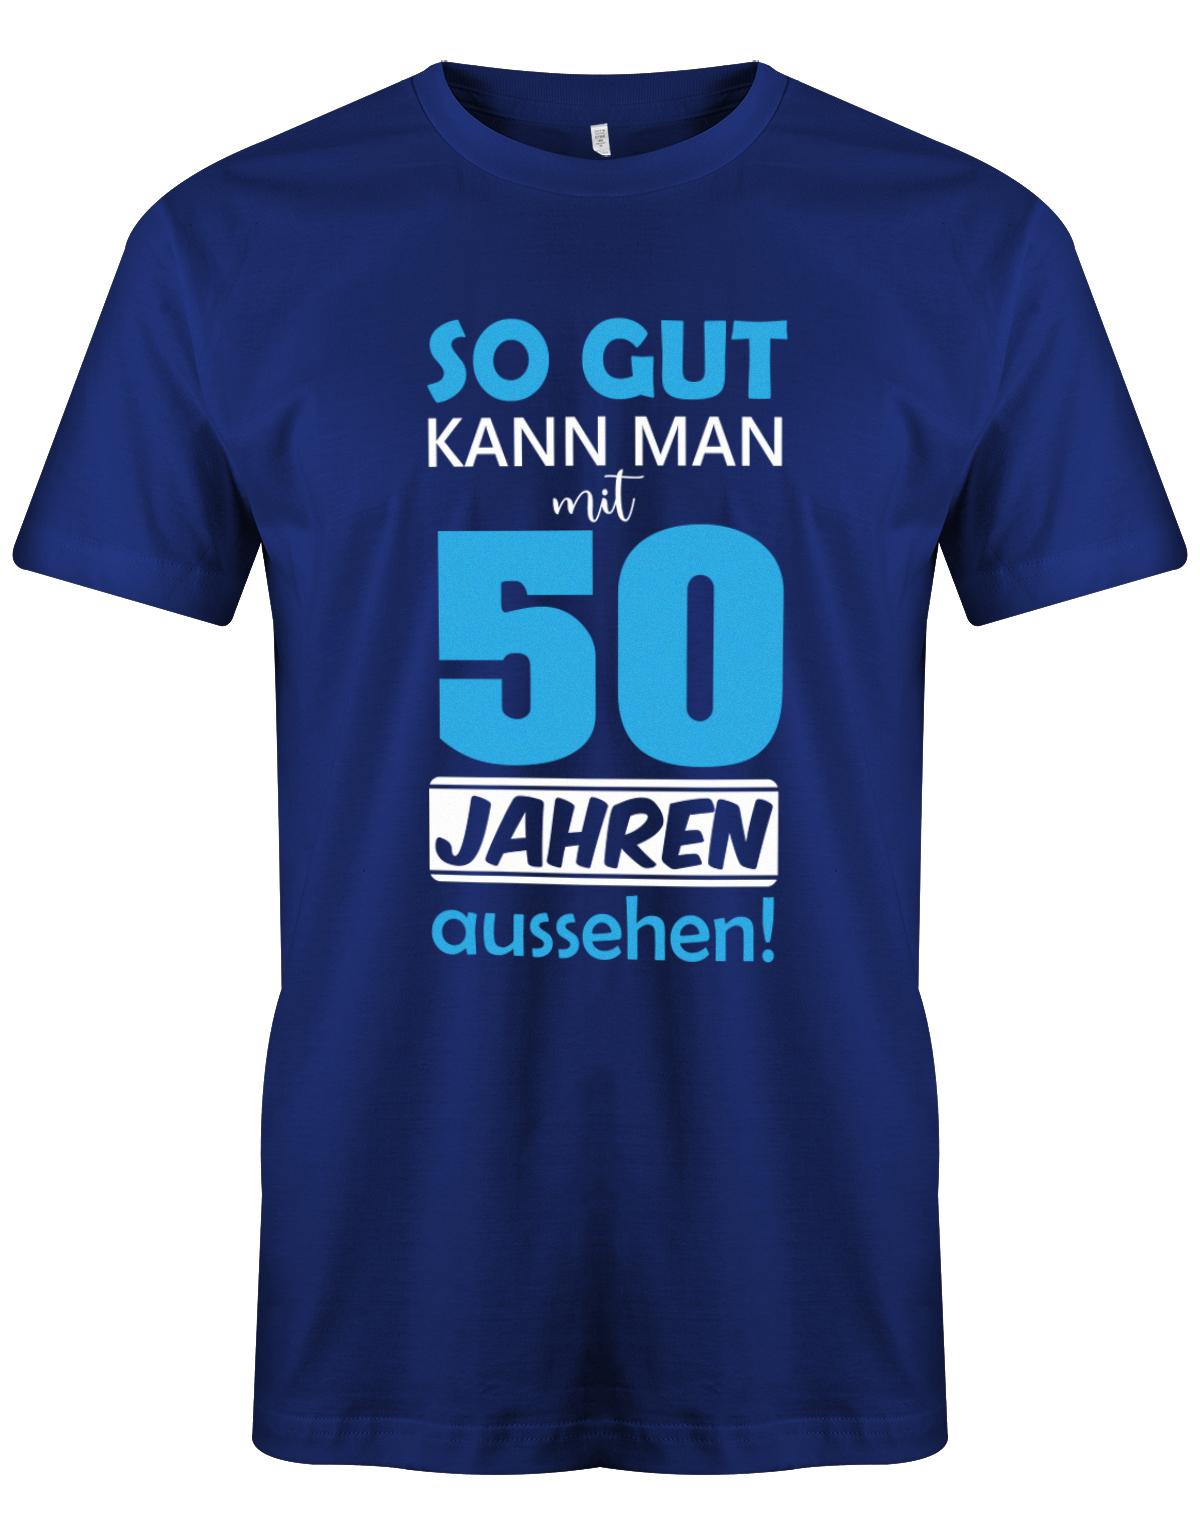 Lustiges T-Shirt zum 50. Geburtstag für den Mann Bedruckt mit So gut kann man mit 50 Jahren aussehen. Royalblau